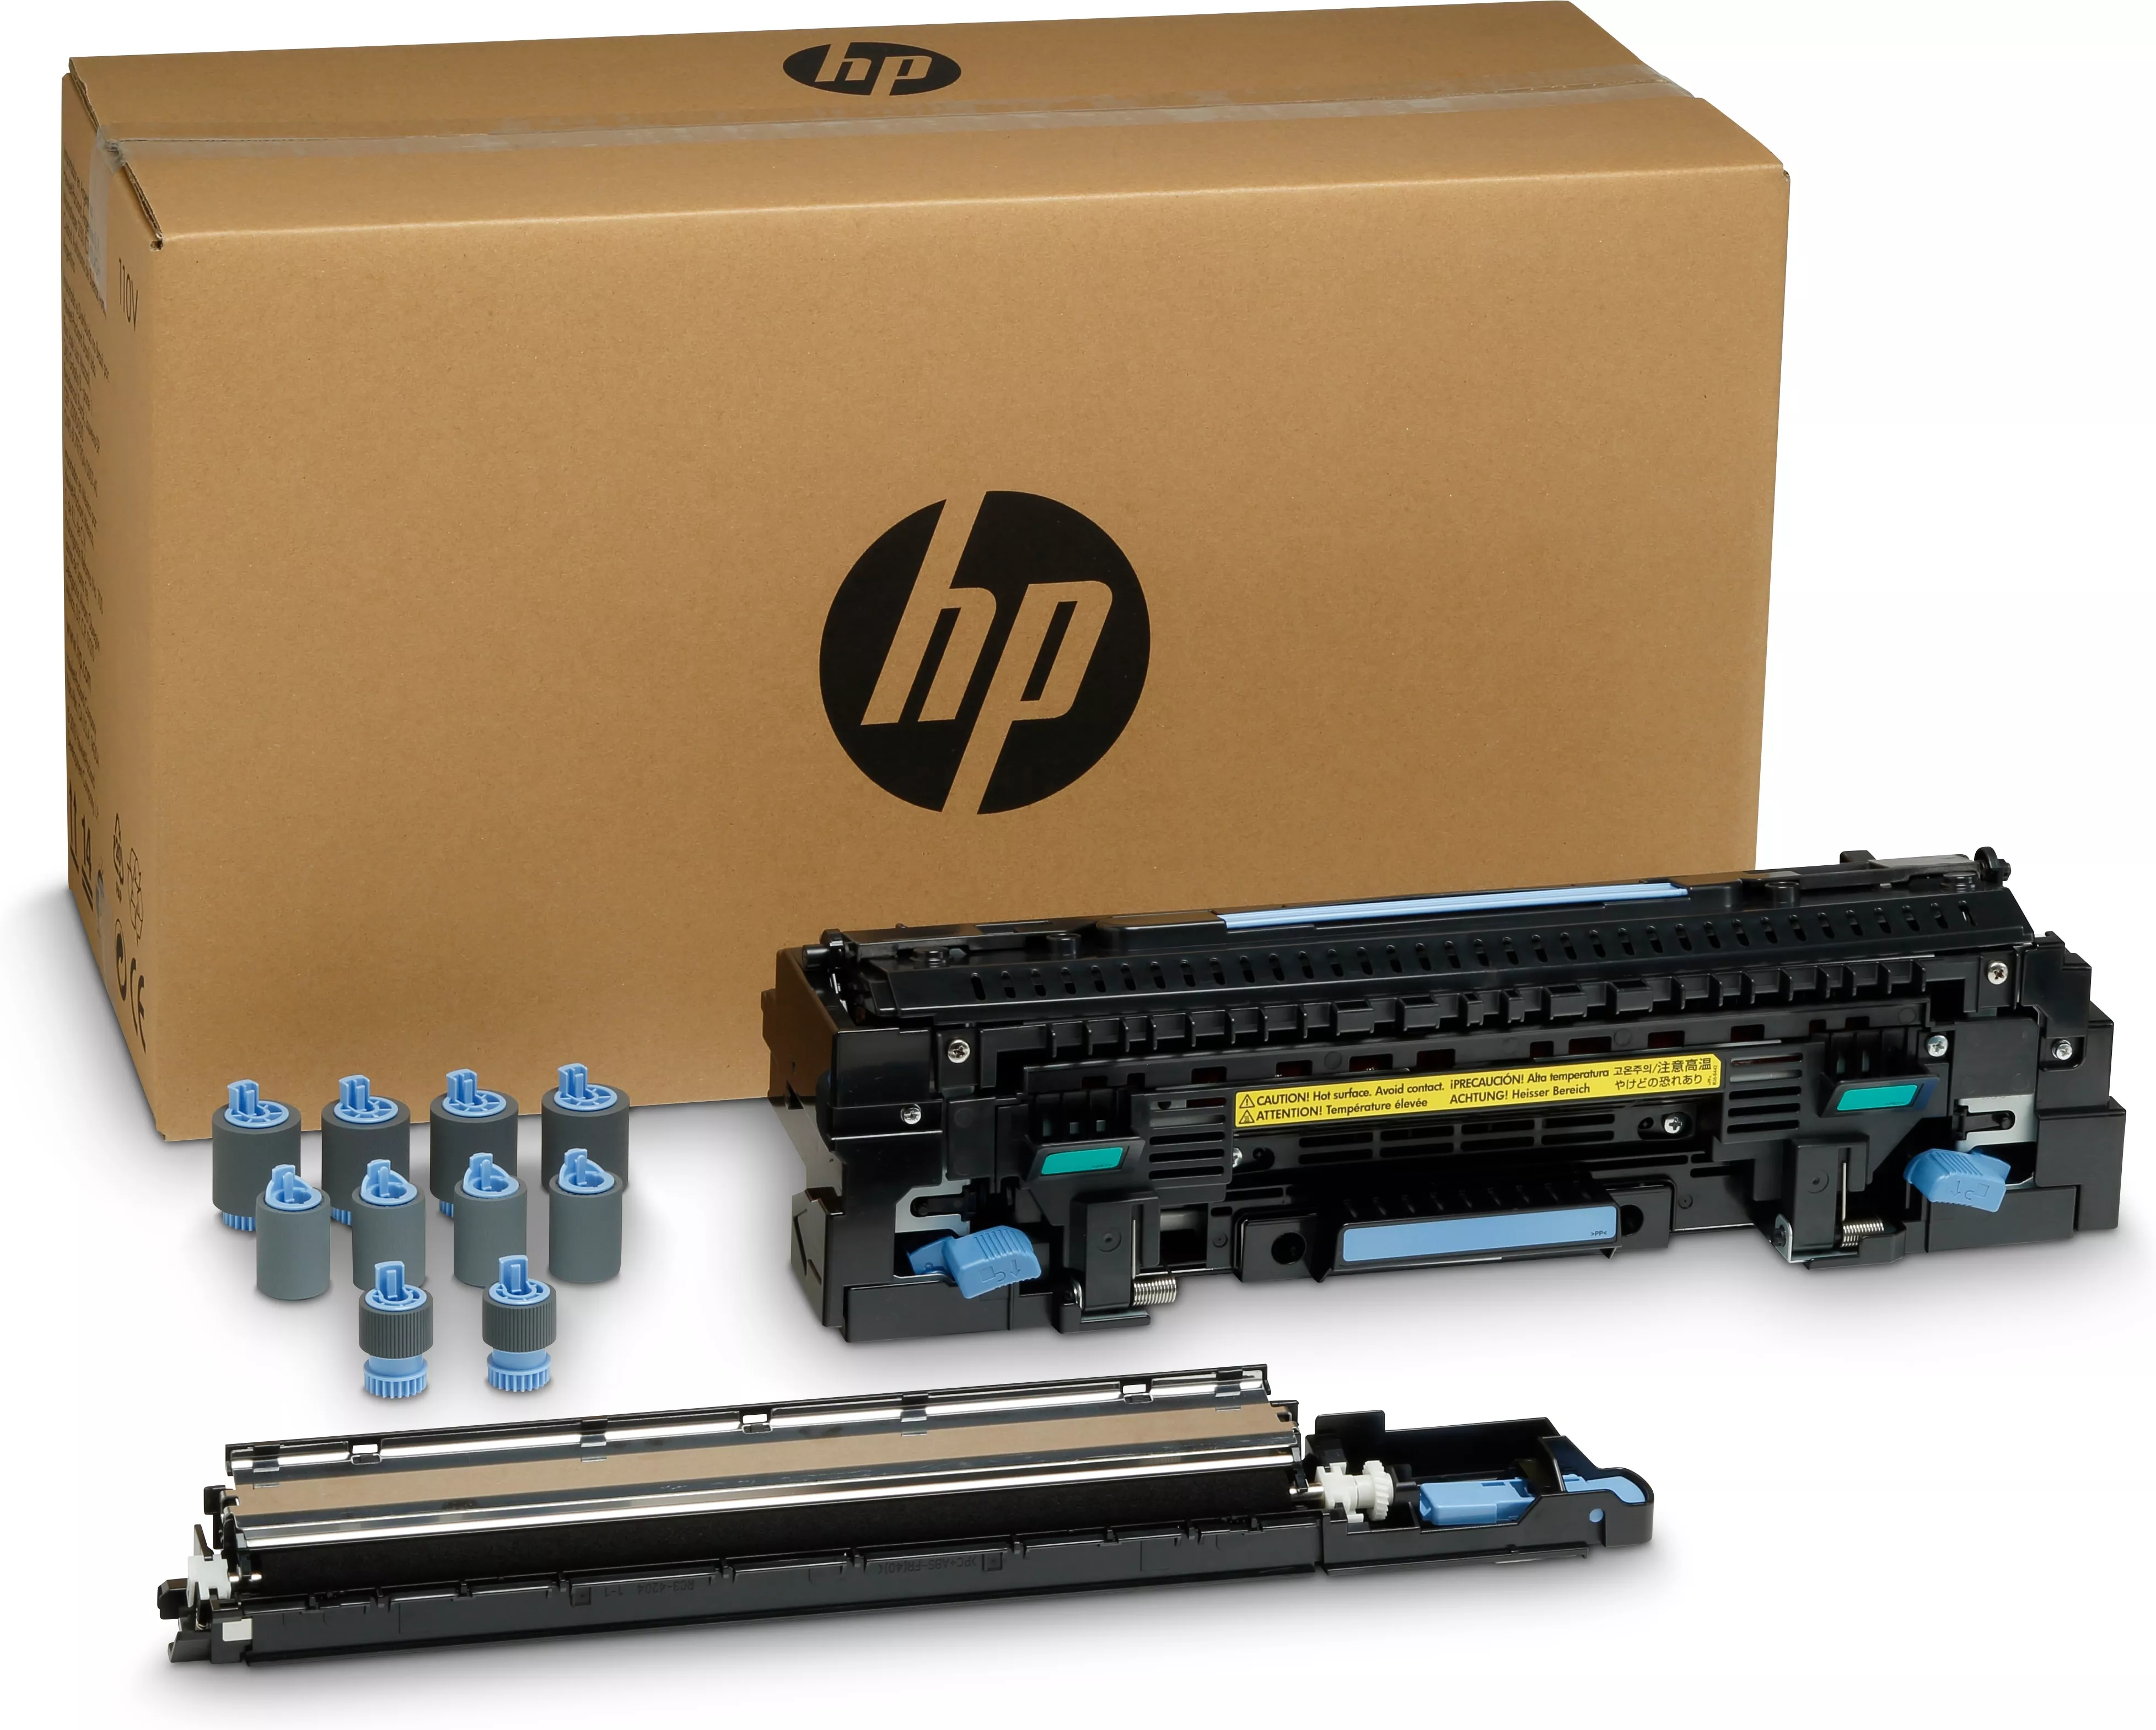 Vente HP original C2H57A fuser maintenance kit C2H57A standard HP au meilleur prix - visuel 2